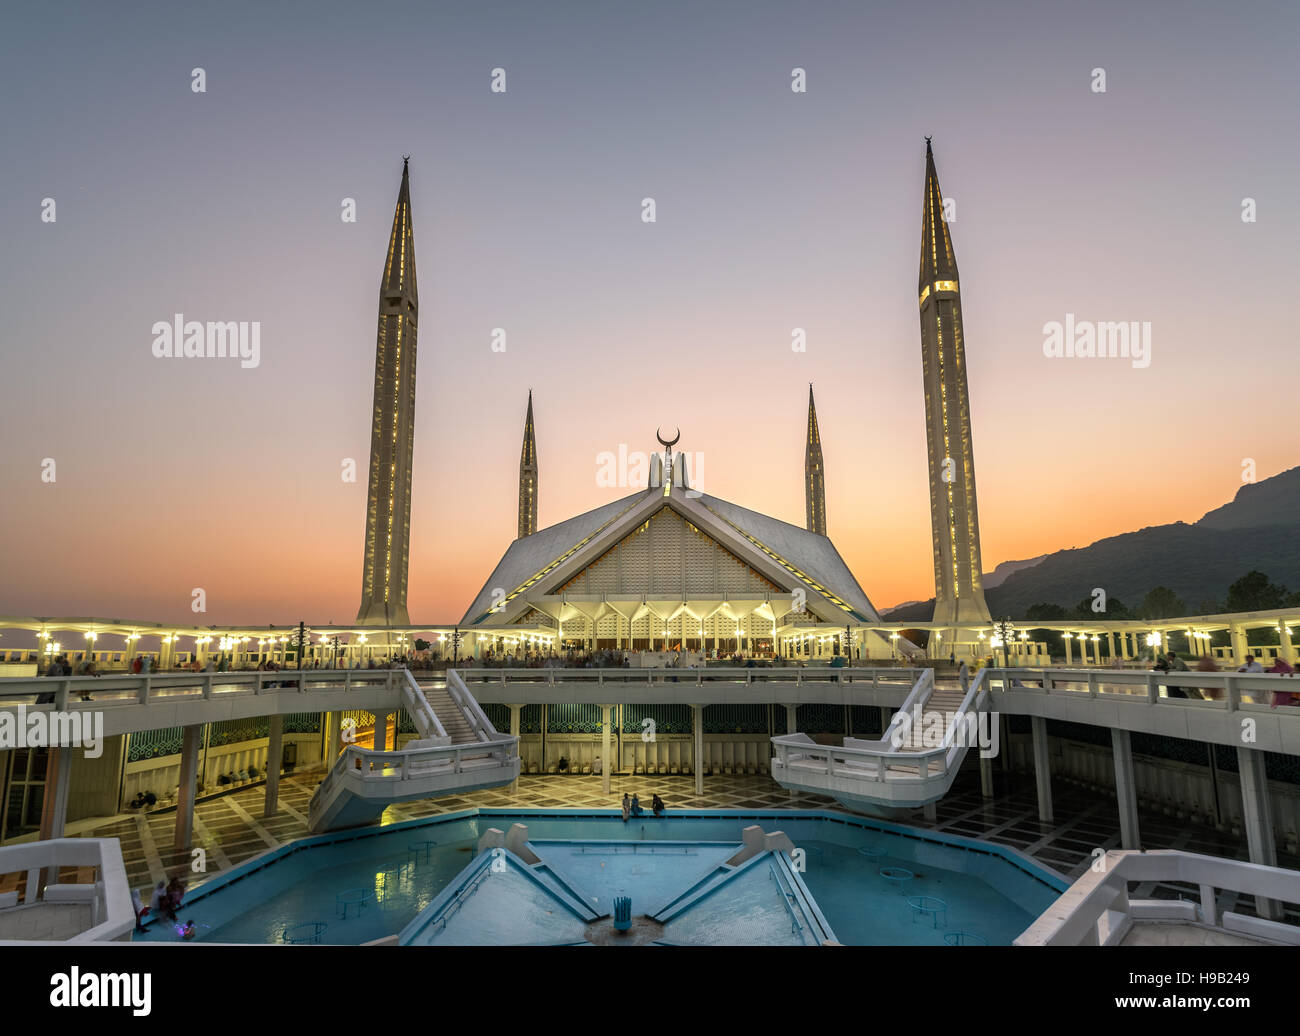 La mosquée Faisal est la plus grande mosquée du Pakistan situé dans la capitale Islamabad Banque D'Images